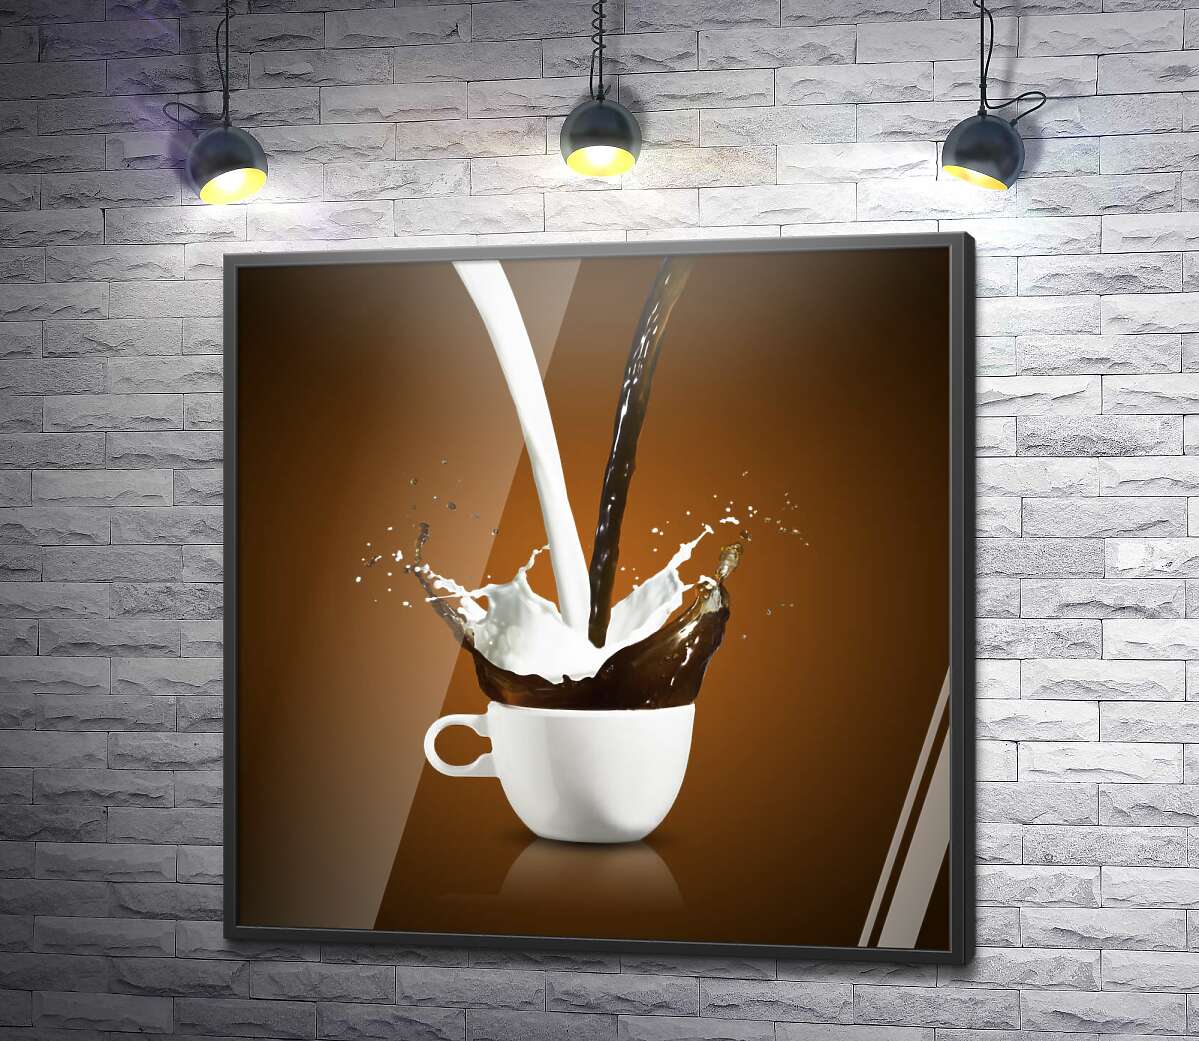 постер Кофе и молоко в одной чашке